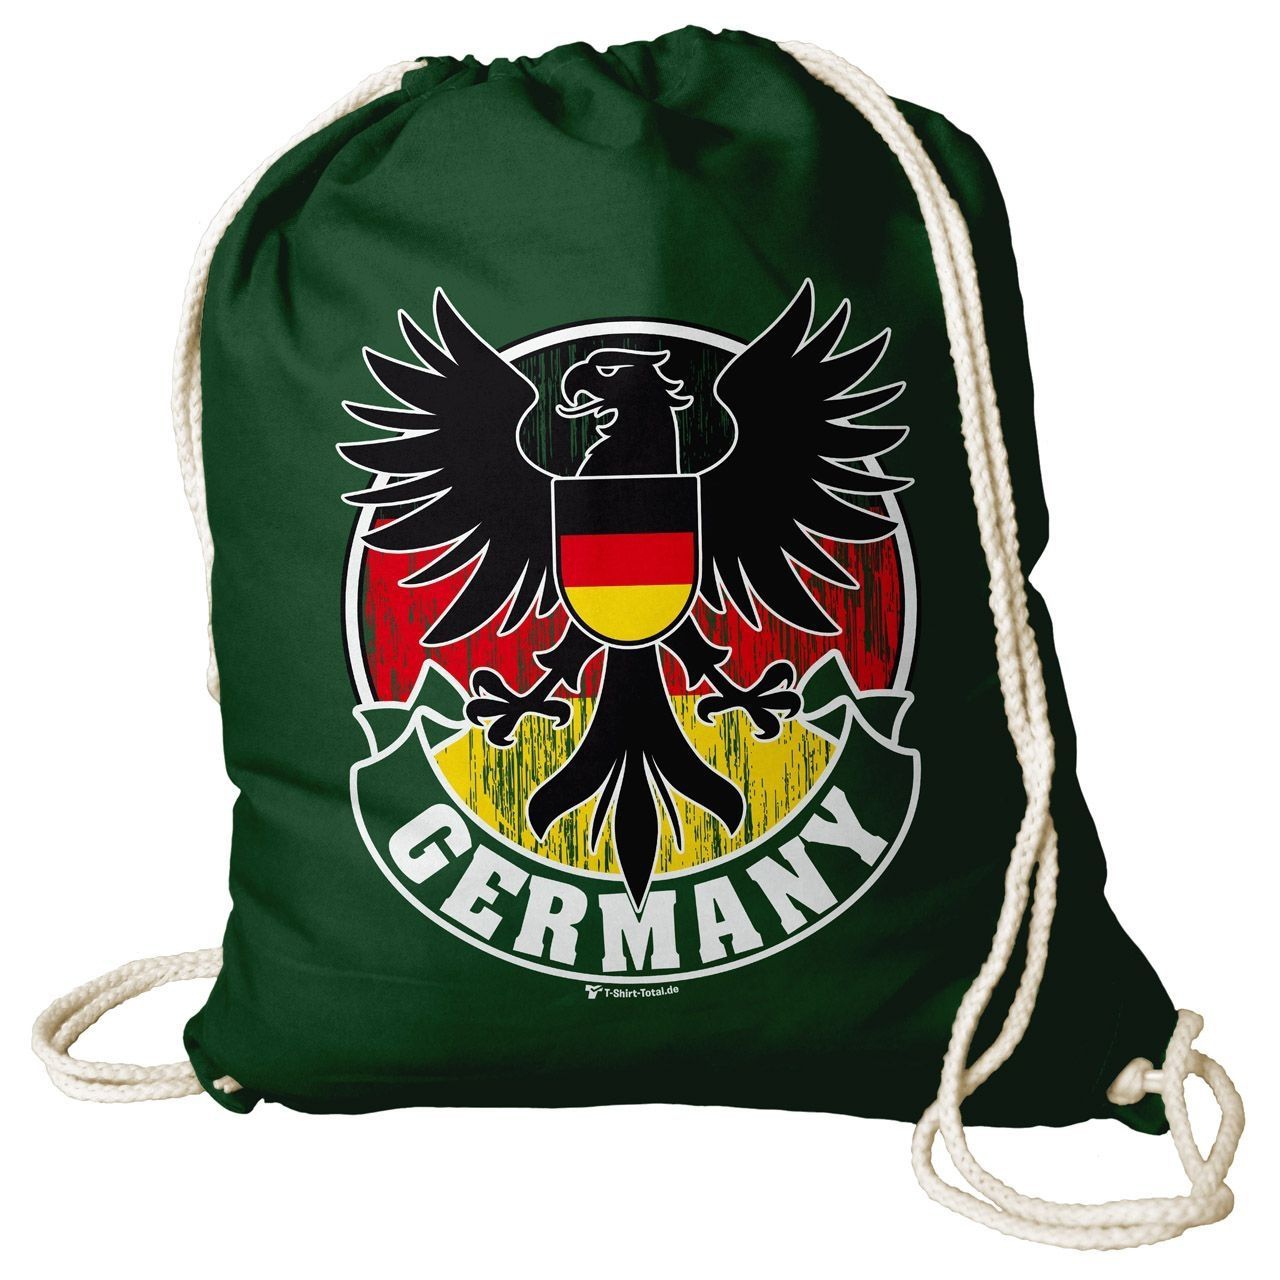 Germany Adler Rucksack Beutel dunkelgrün